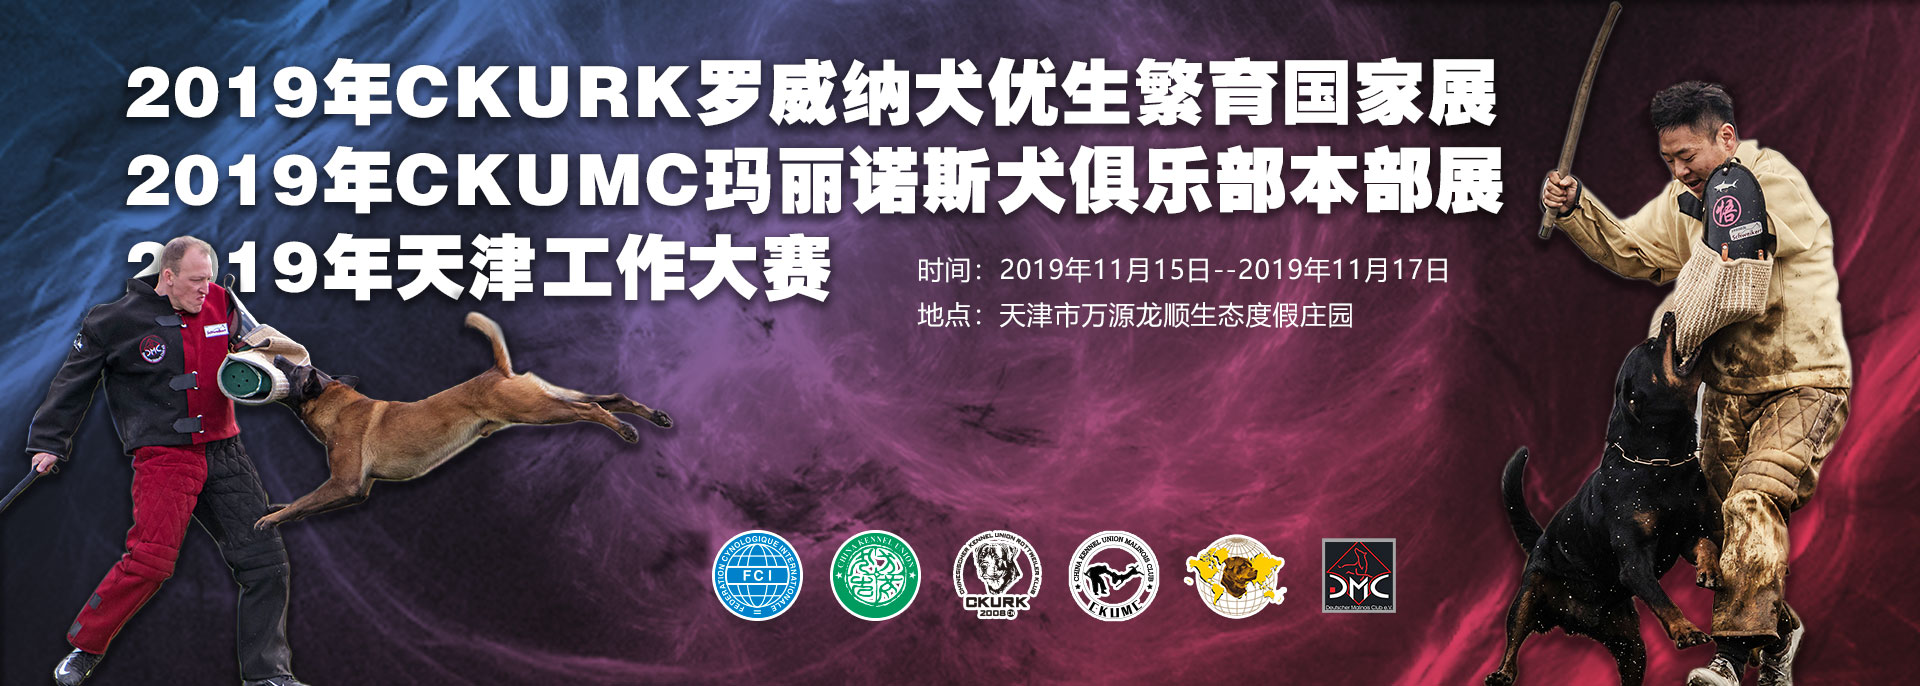 宠爱王国2019年CKURK-CKUMC联合工作大赛、CKURK优生繁育国家展（天津）<br/>天津地方繁殖展、首届CKURK地方联赛